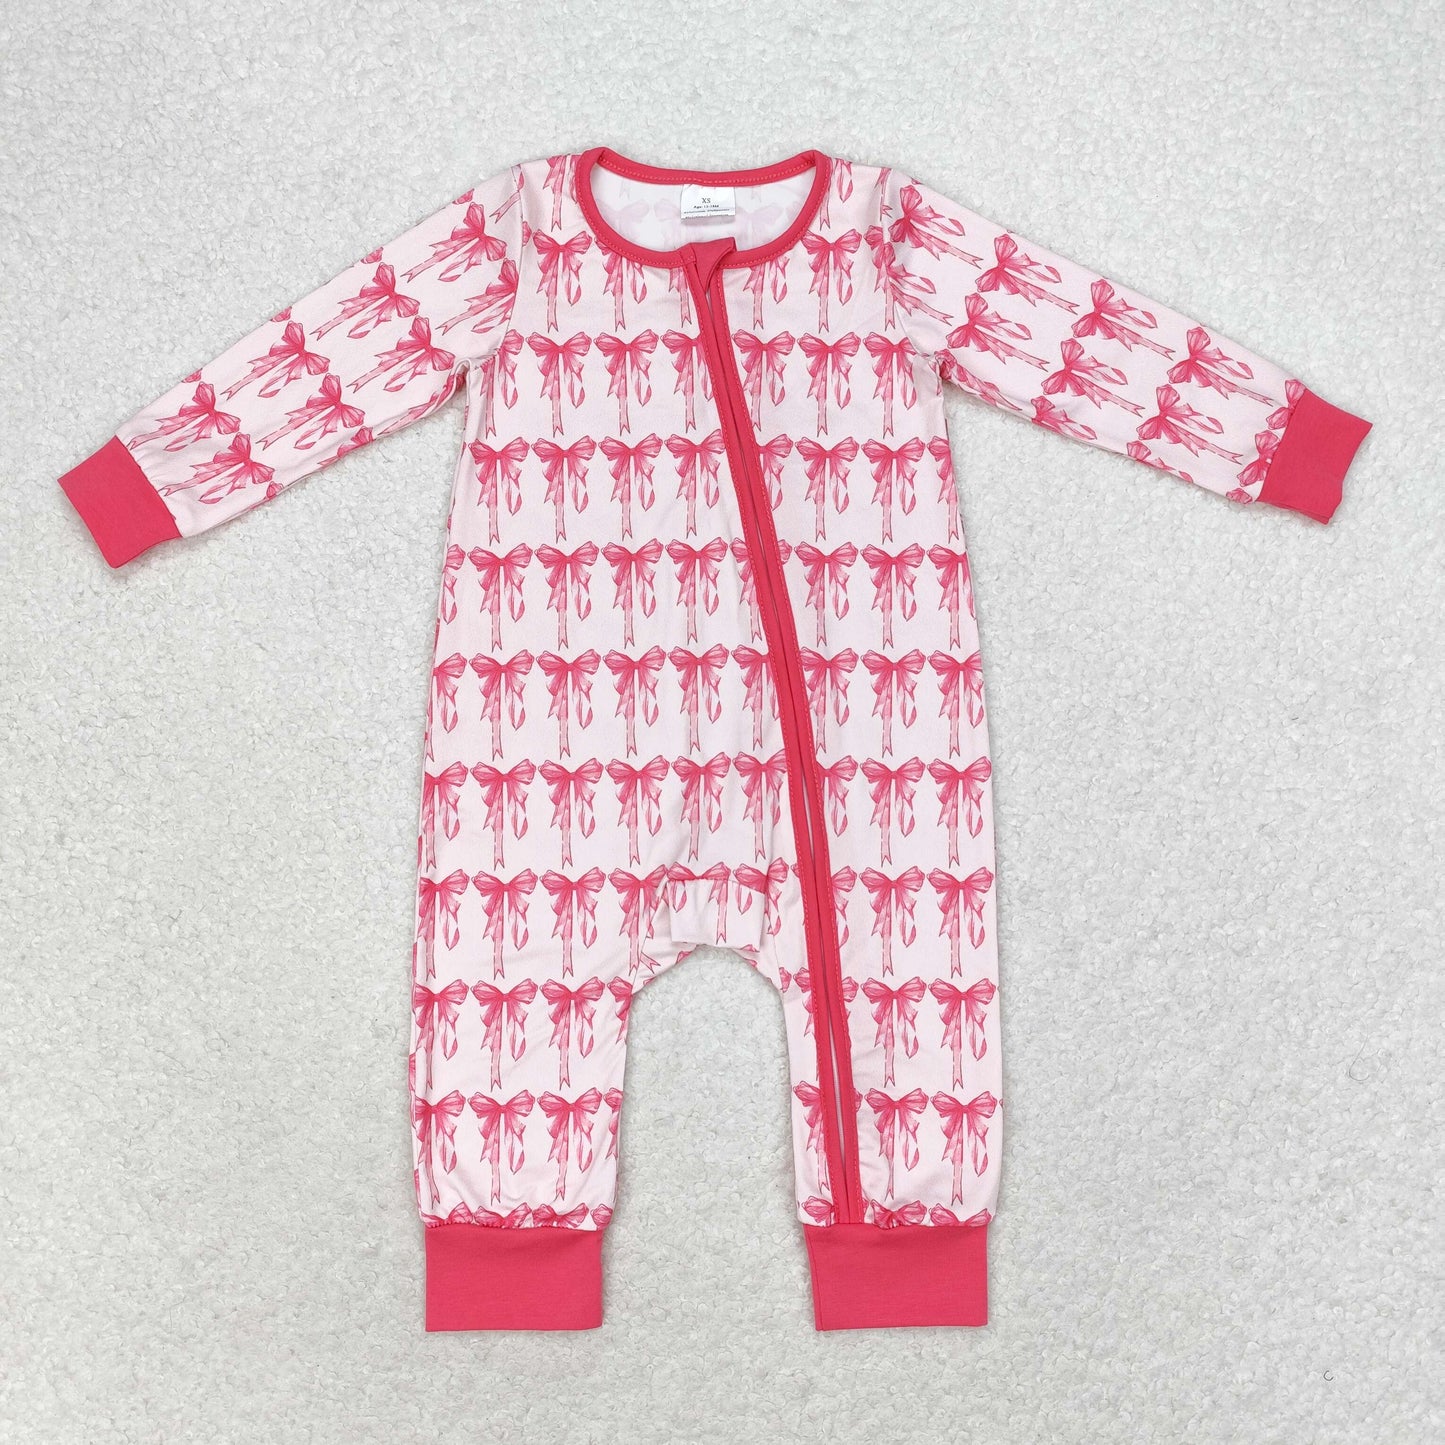 Pink Bows Print Sisters Matching Pajamas Clothes